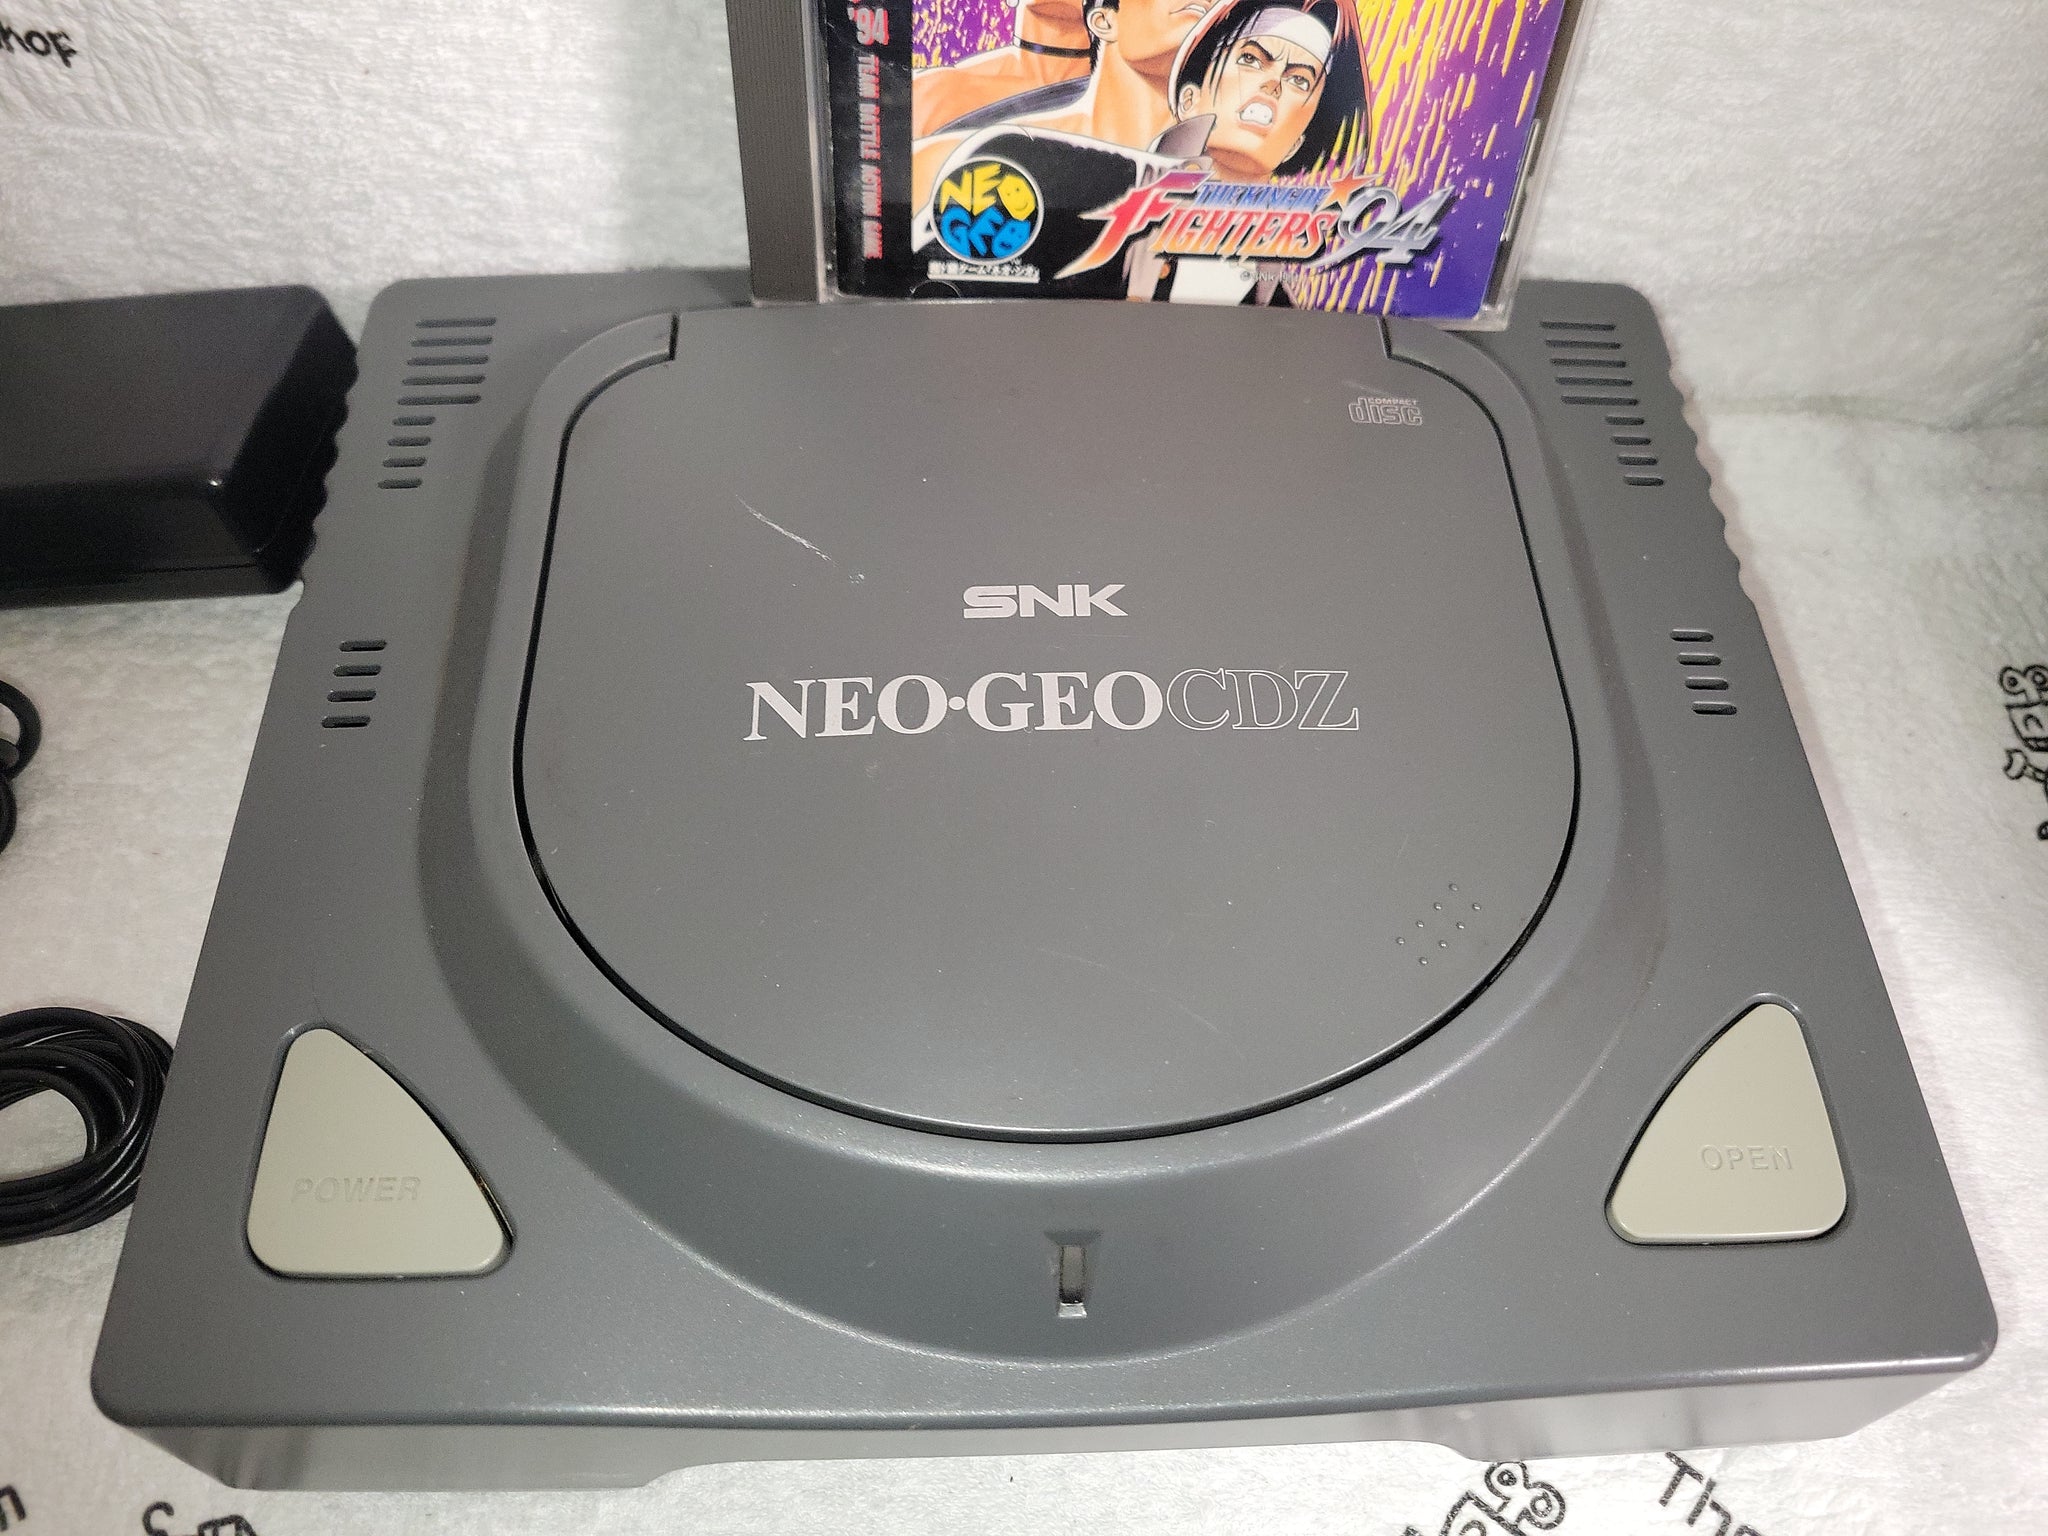 Snk NeoGeo Cdz Console - Snk Neogeo cd ngcd – The Emporium 